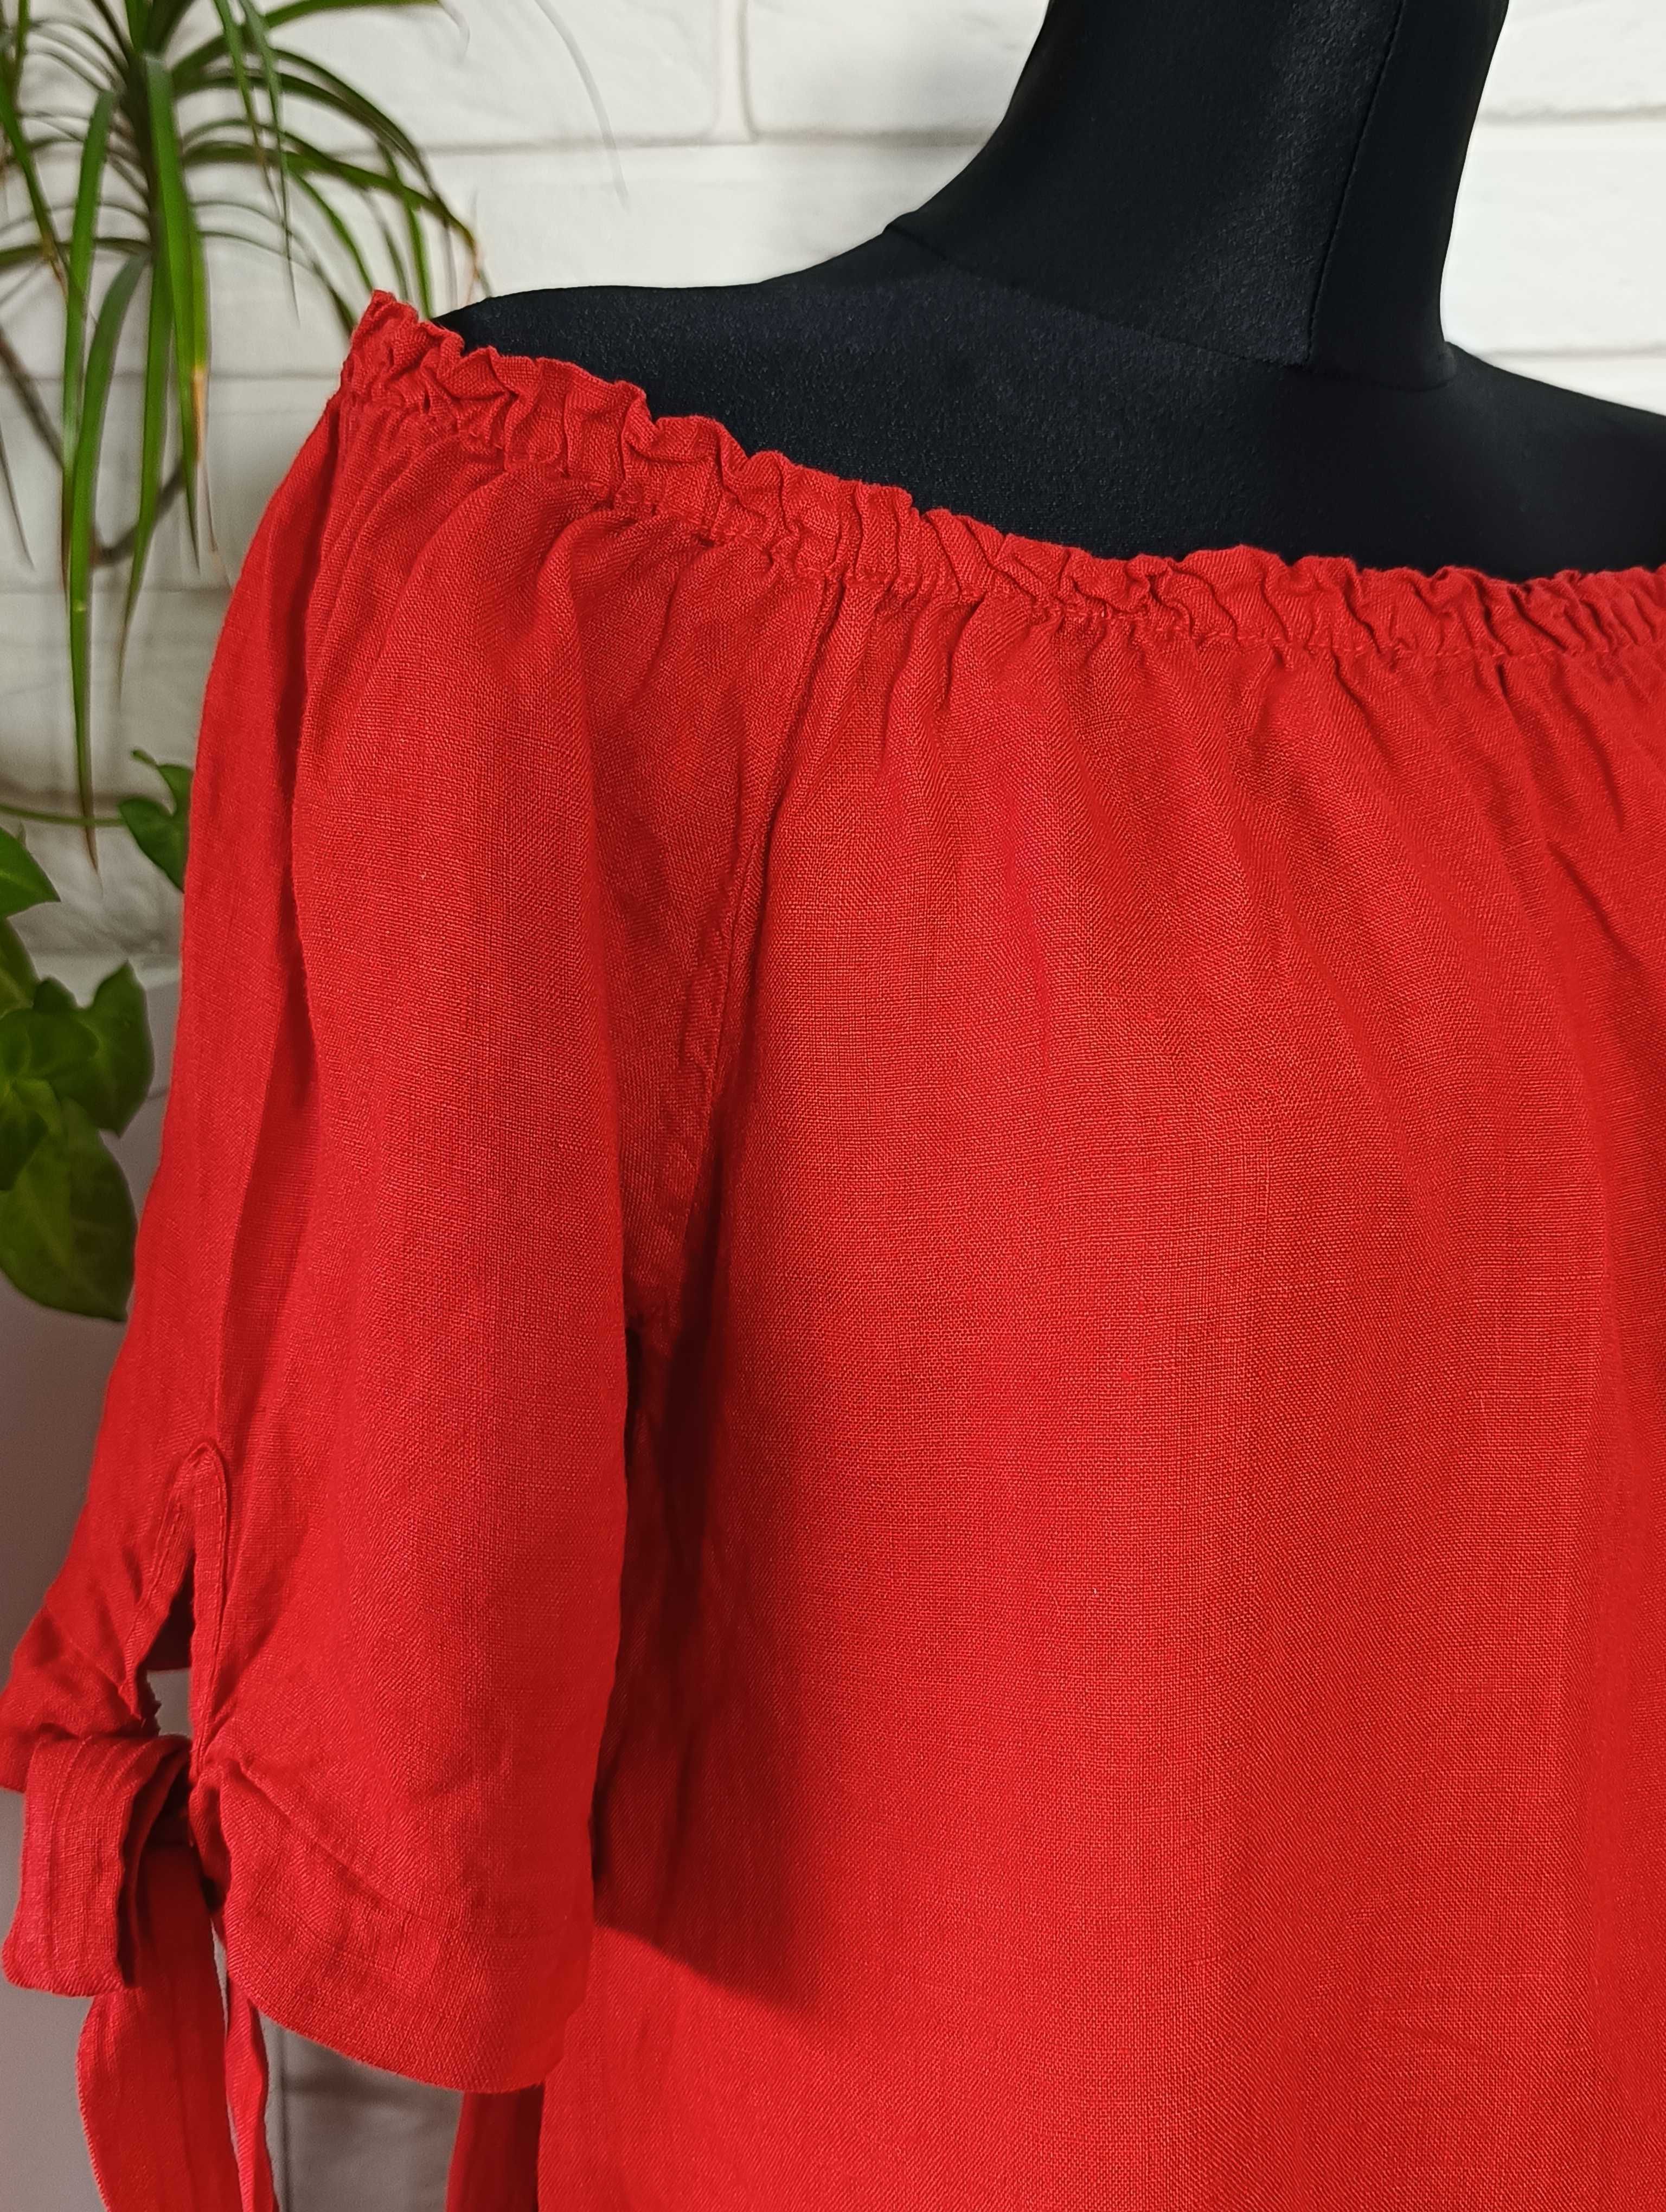 Made in Italy czerwona lniana sukienka hiszpanka 100% len jak nowa 38